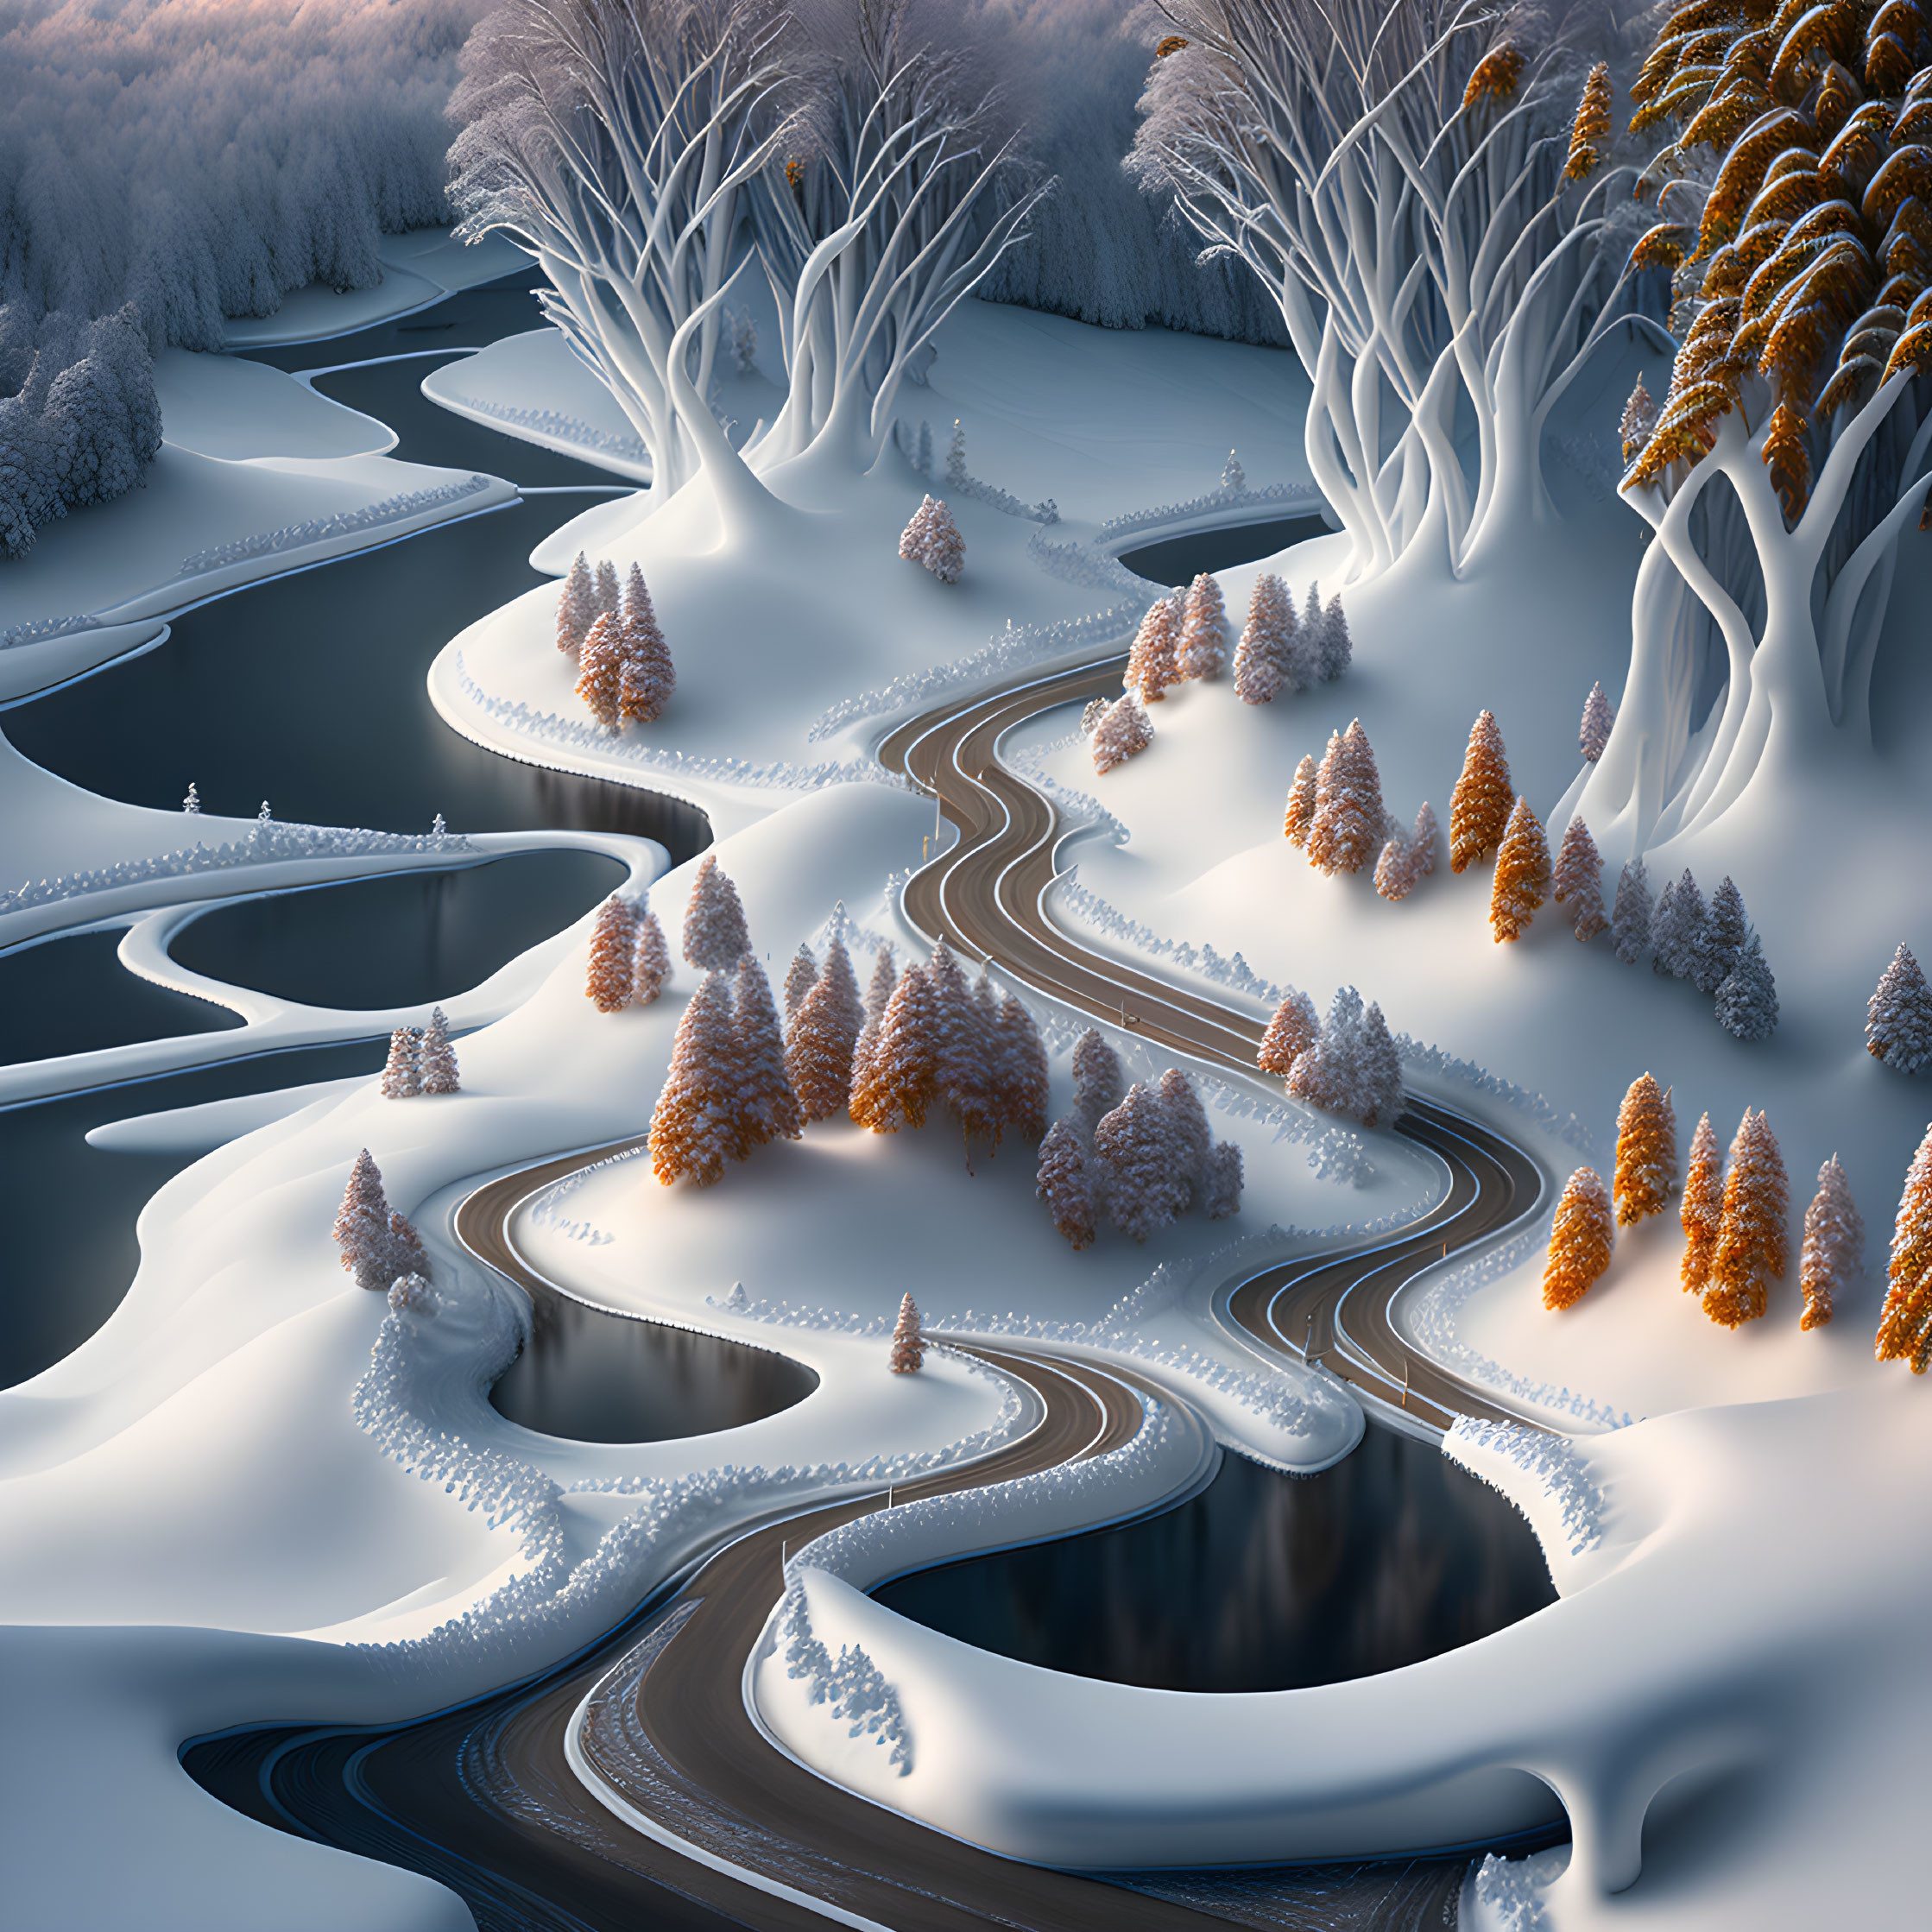 Winter's Serpentine Path